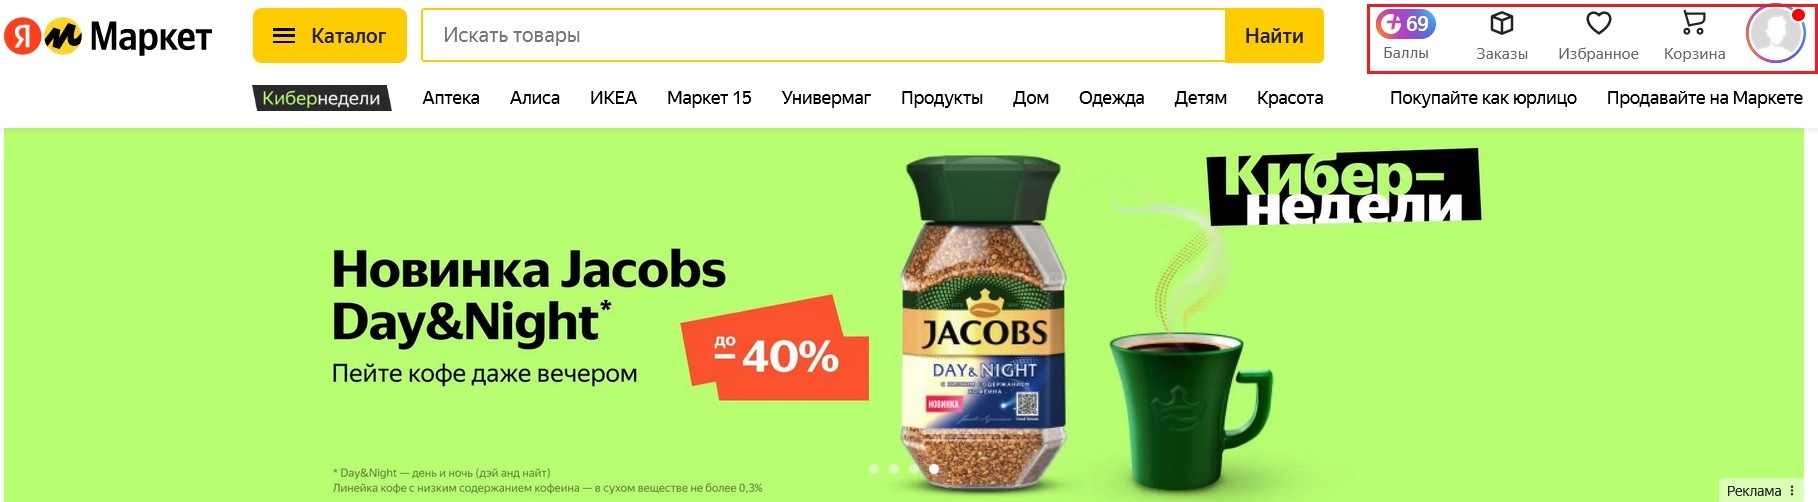 Баллы Яндекс.Плюс на маркете